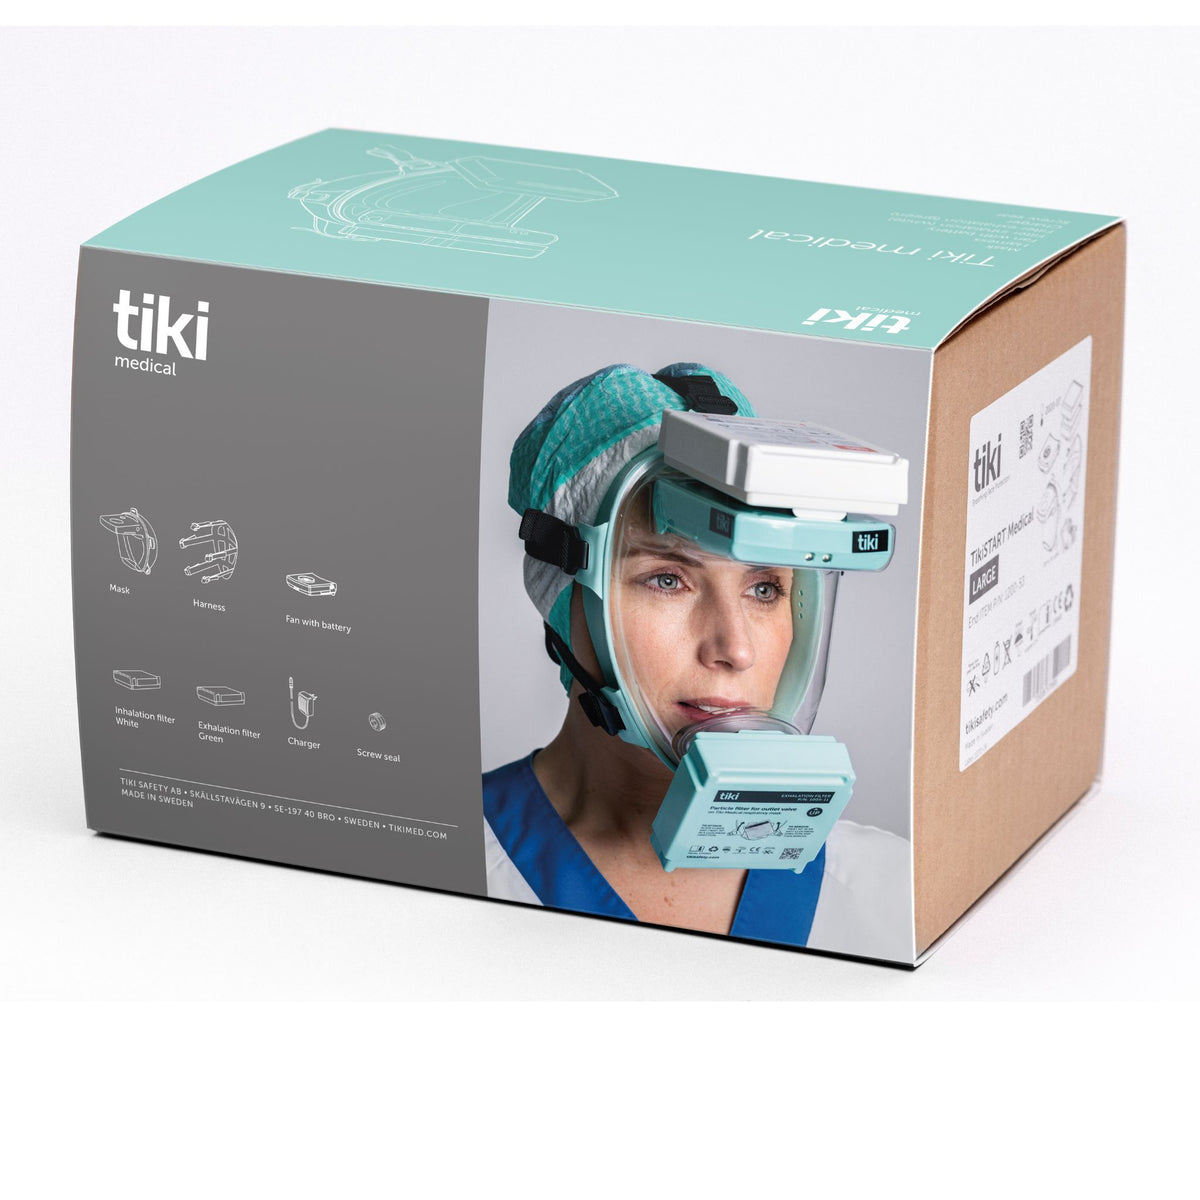 Tiki medical kit